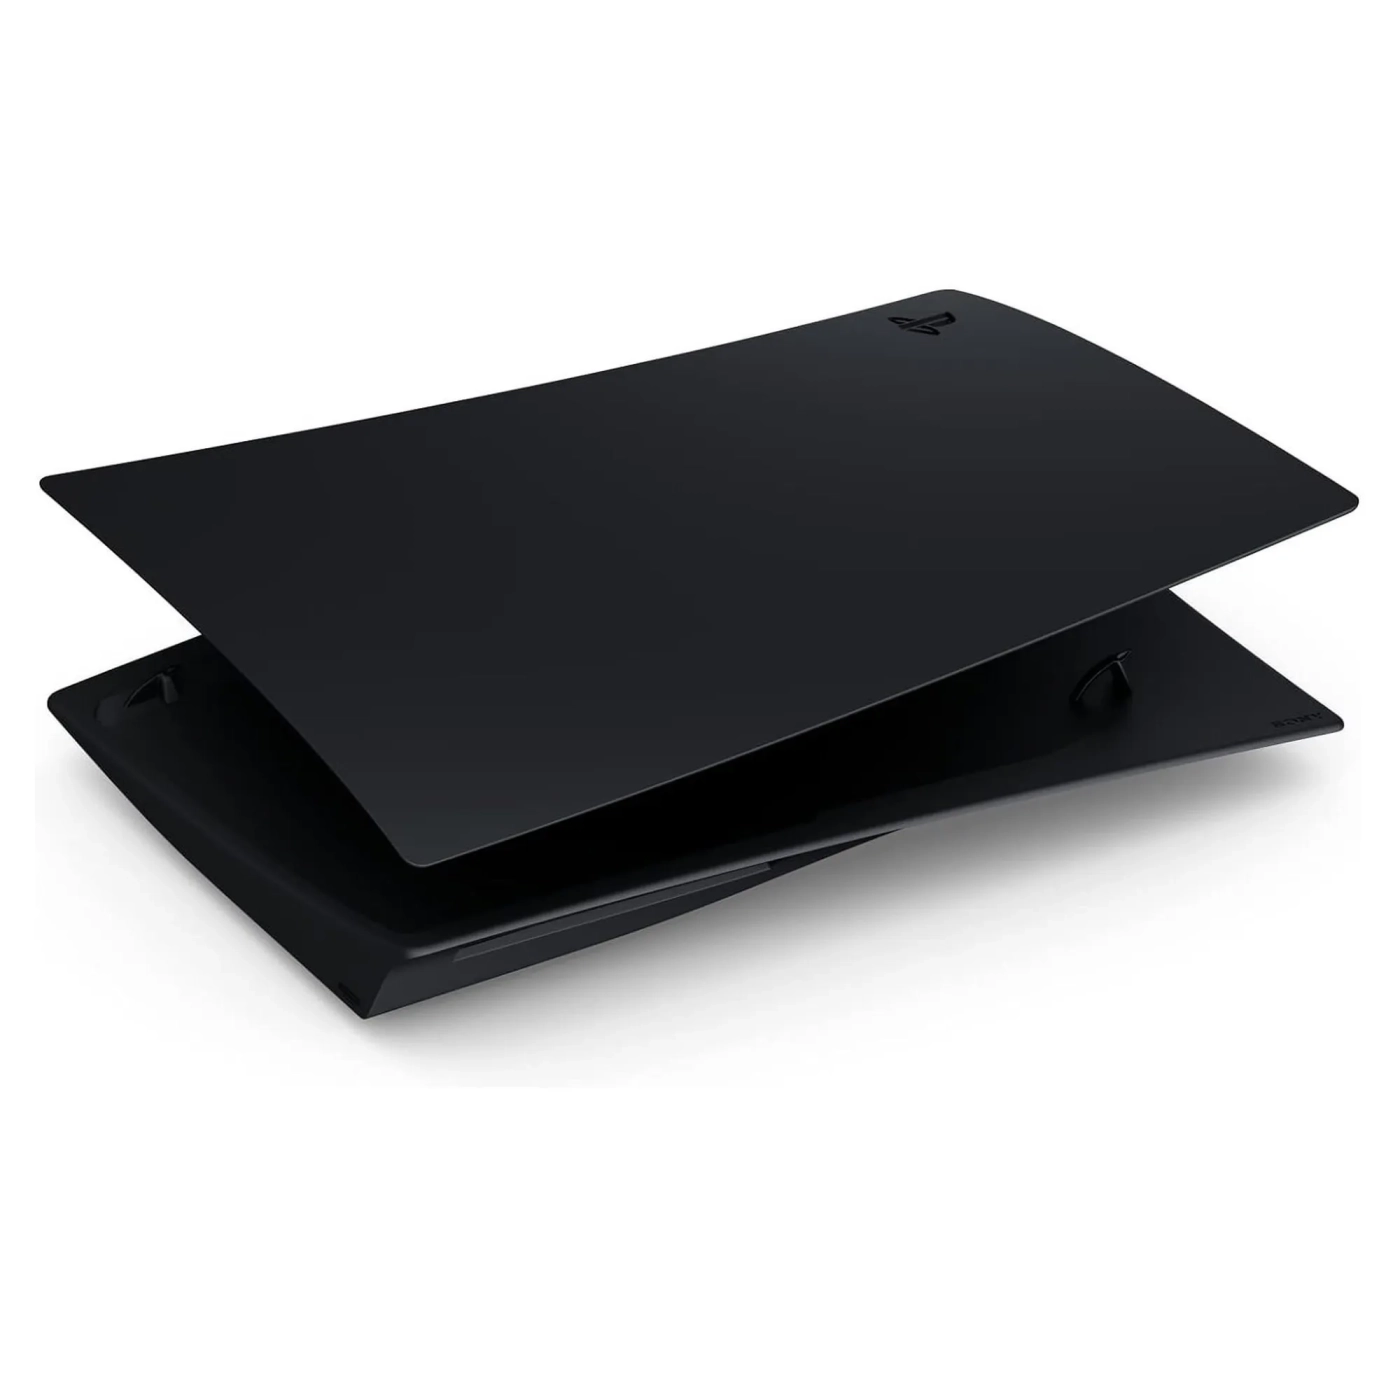 Купить Панели корпуса консоли Sony PlayStation 5 Black (9404095) - фото 3